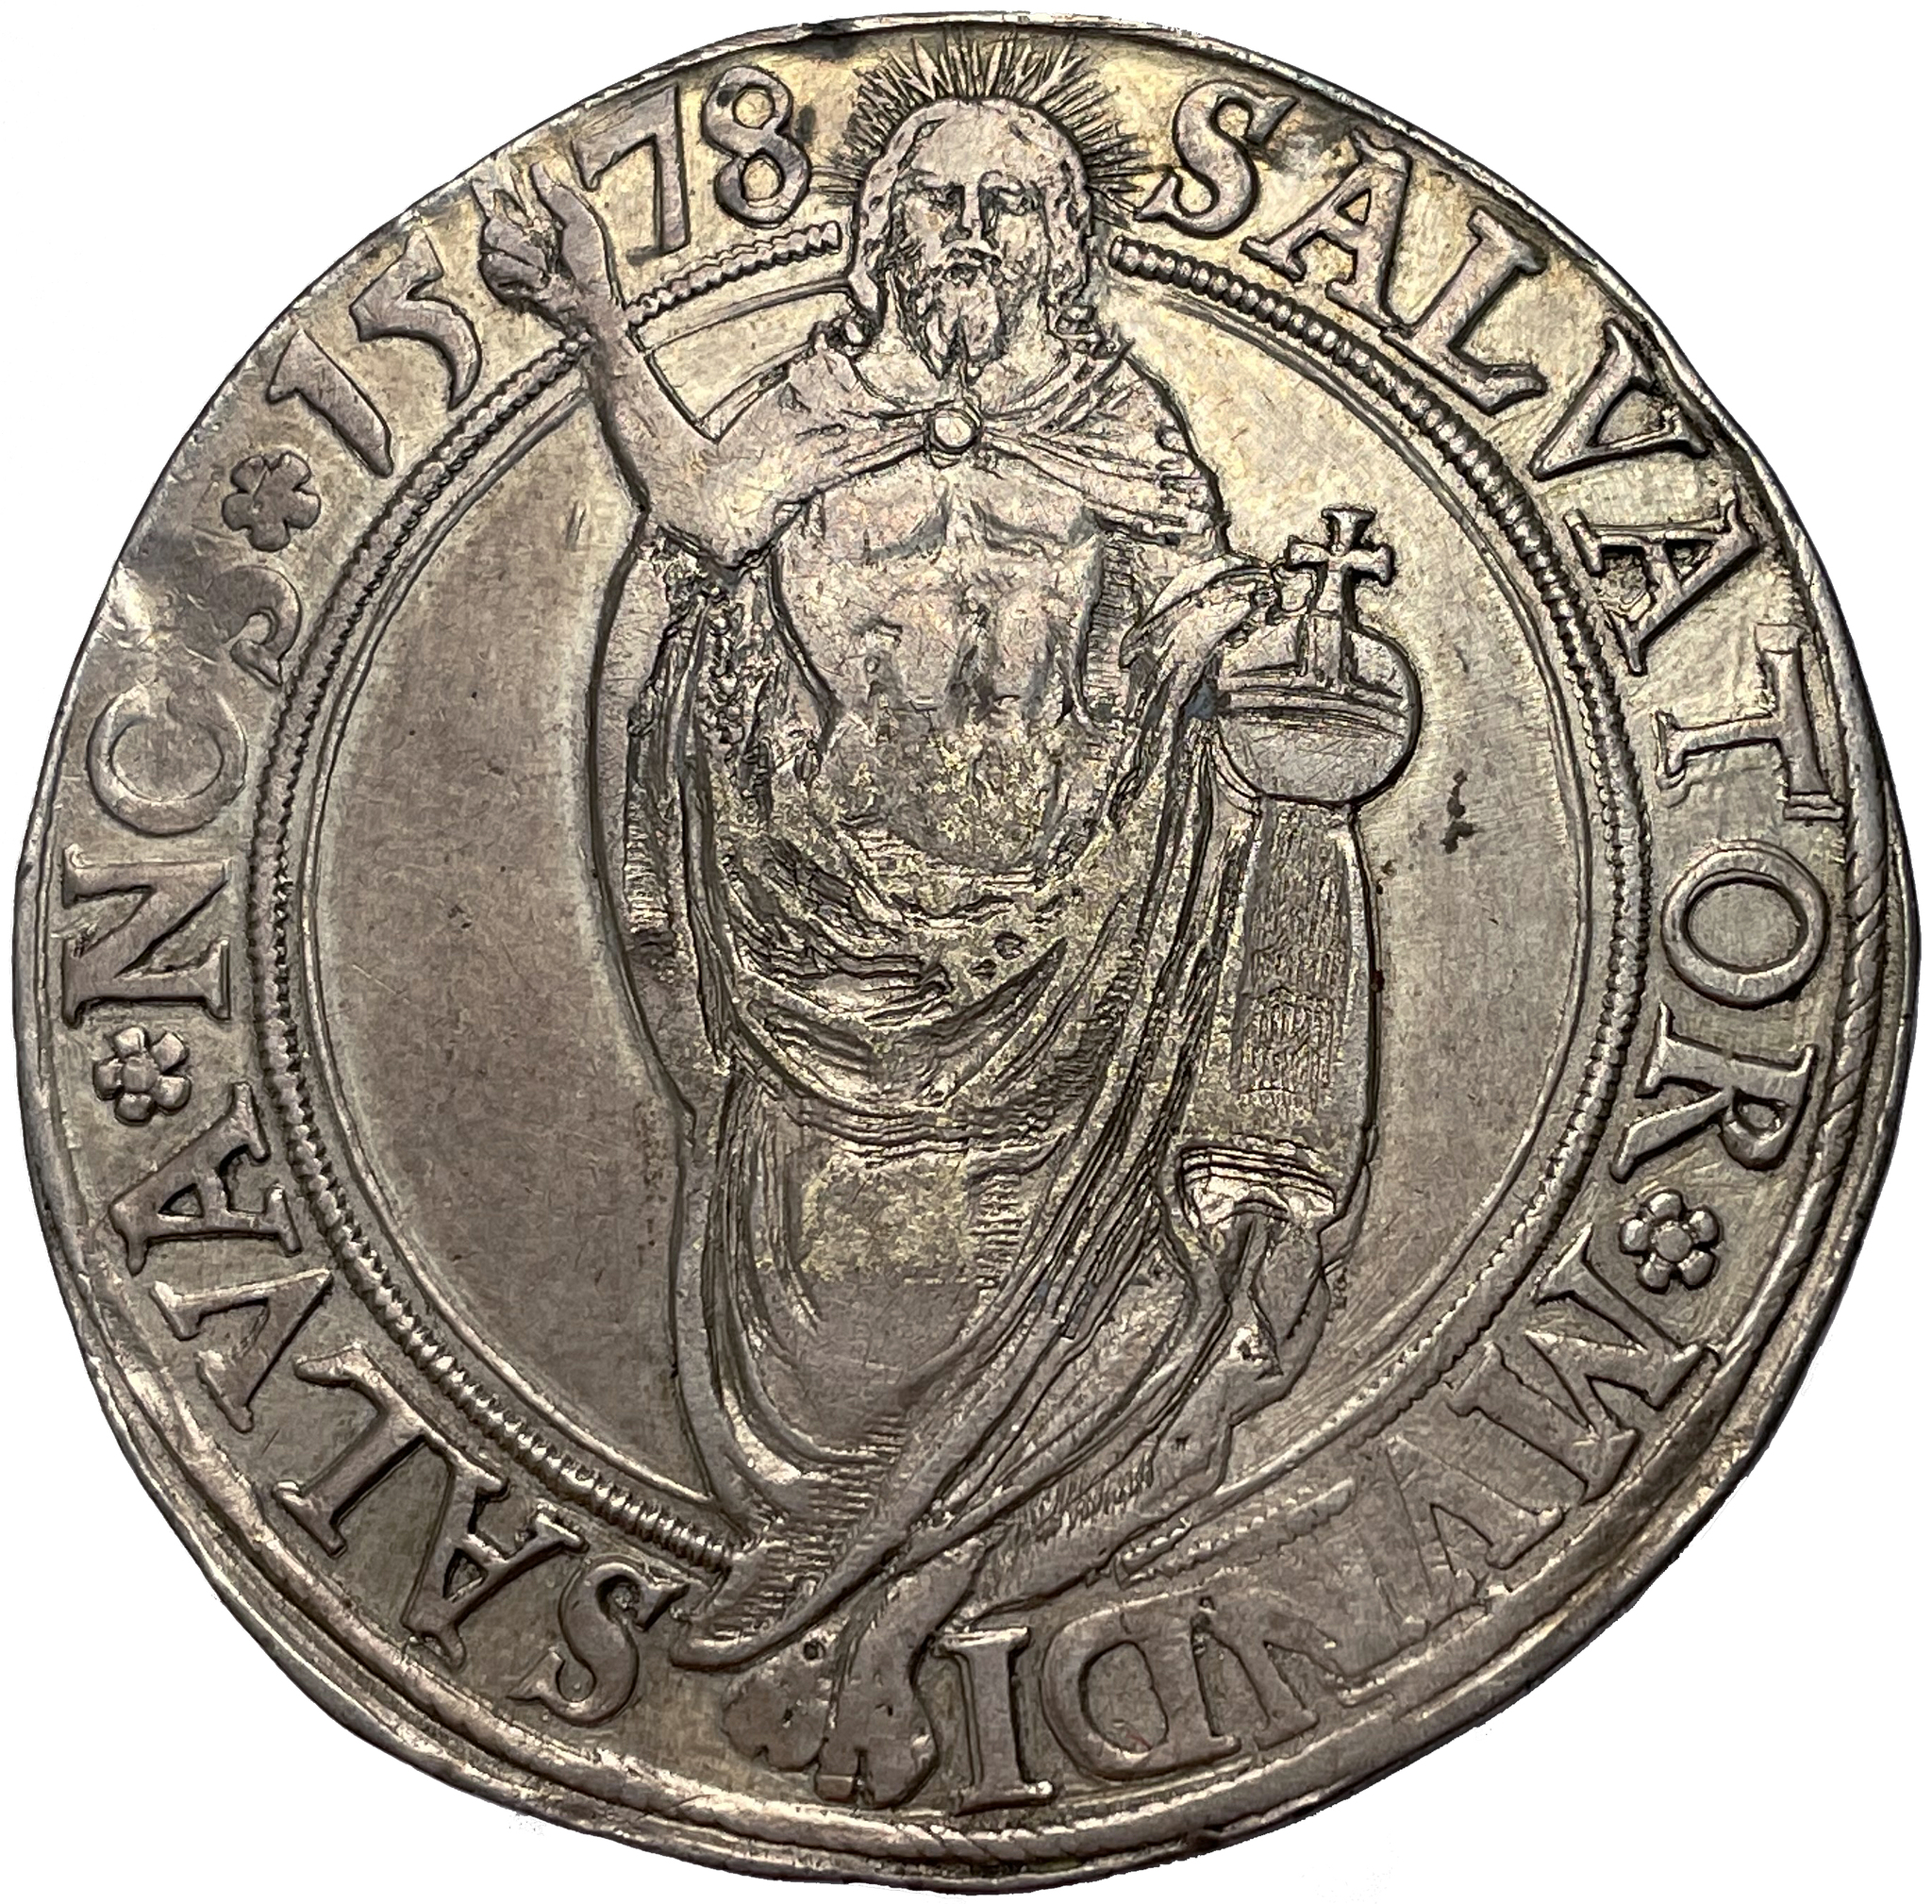 Johan III - Daler 1578 - Vackert exemplar med glans